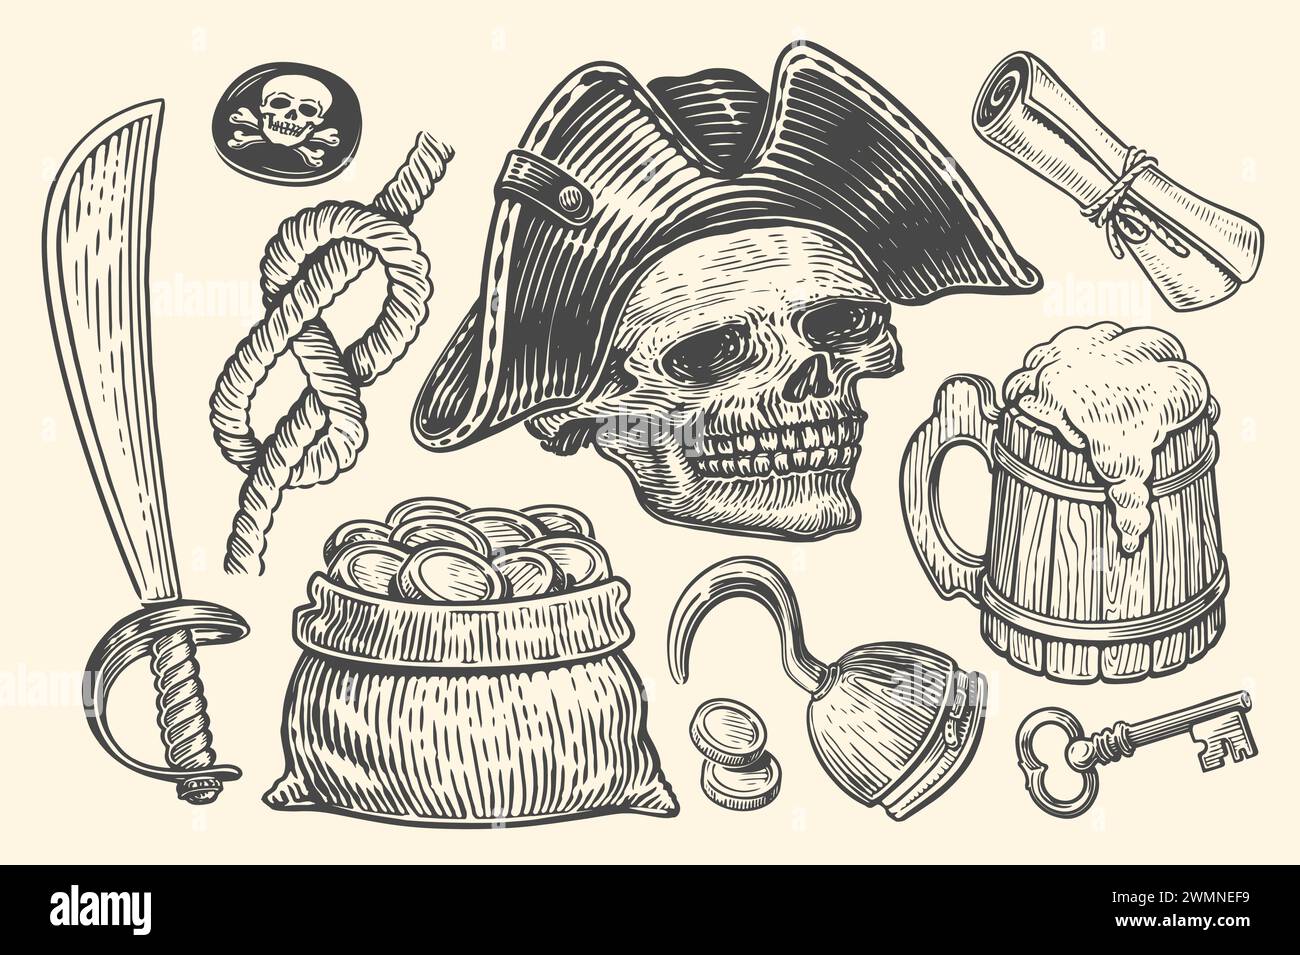 Concetto di pirateria, set di elementi. Illustrazione vettoriale dello schizzo disegnata a mano in stile incisione Illustrazione Vettoriale